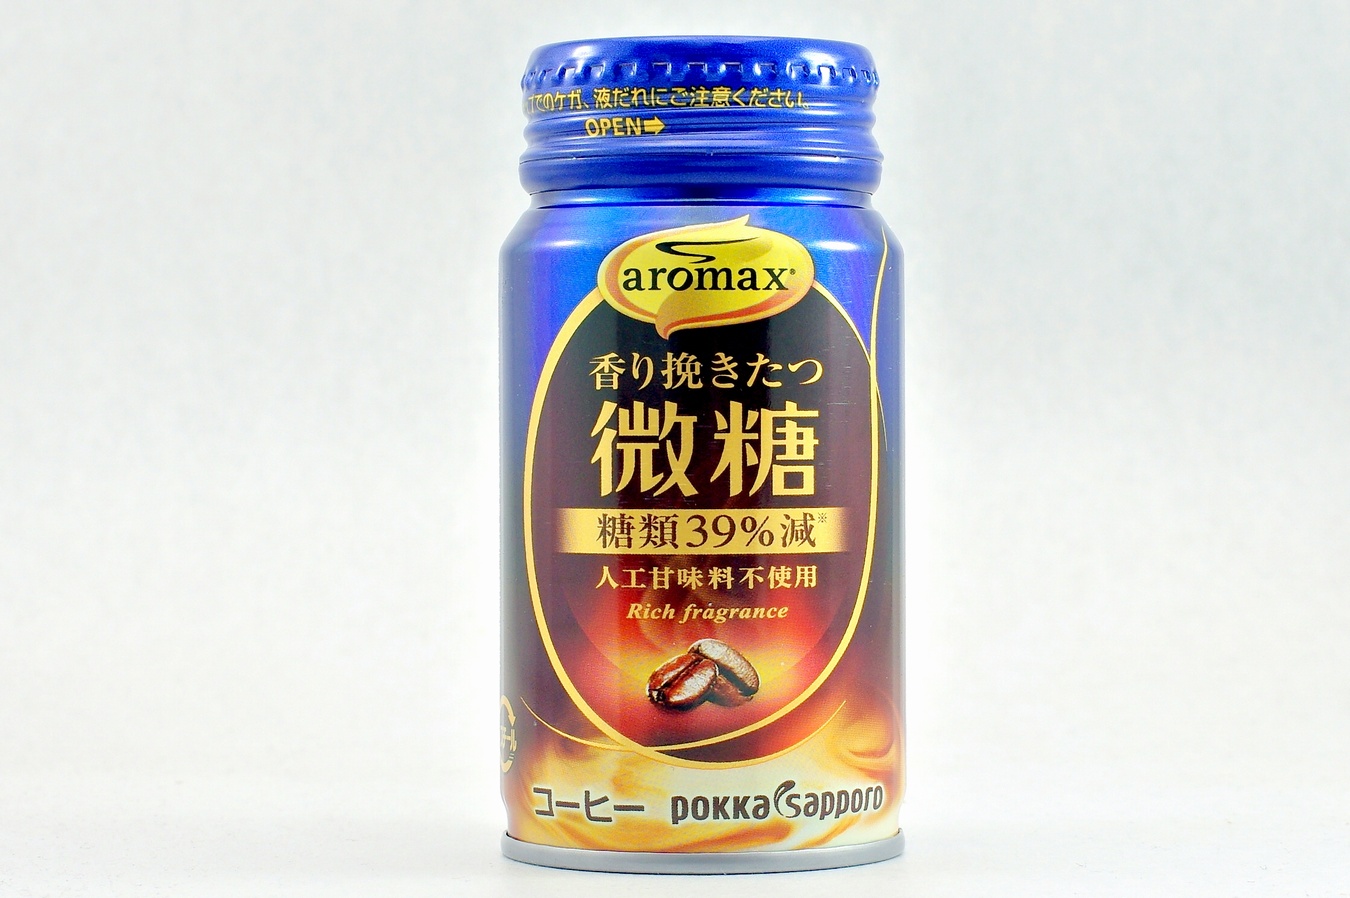 aromax 香り挽きたつ微糖 2015年3月